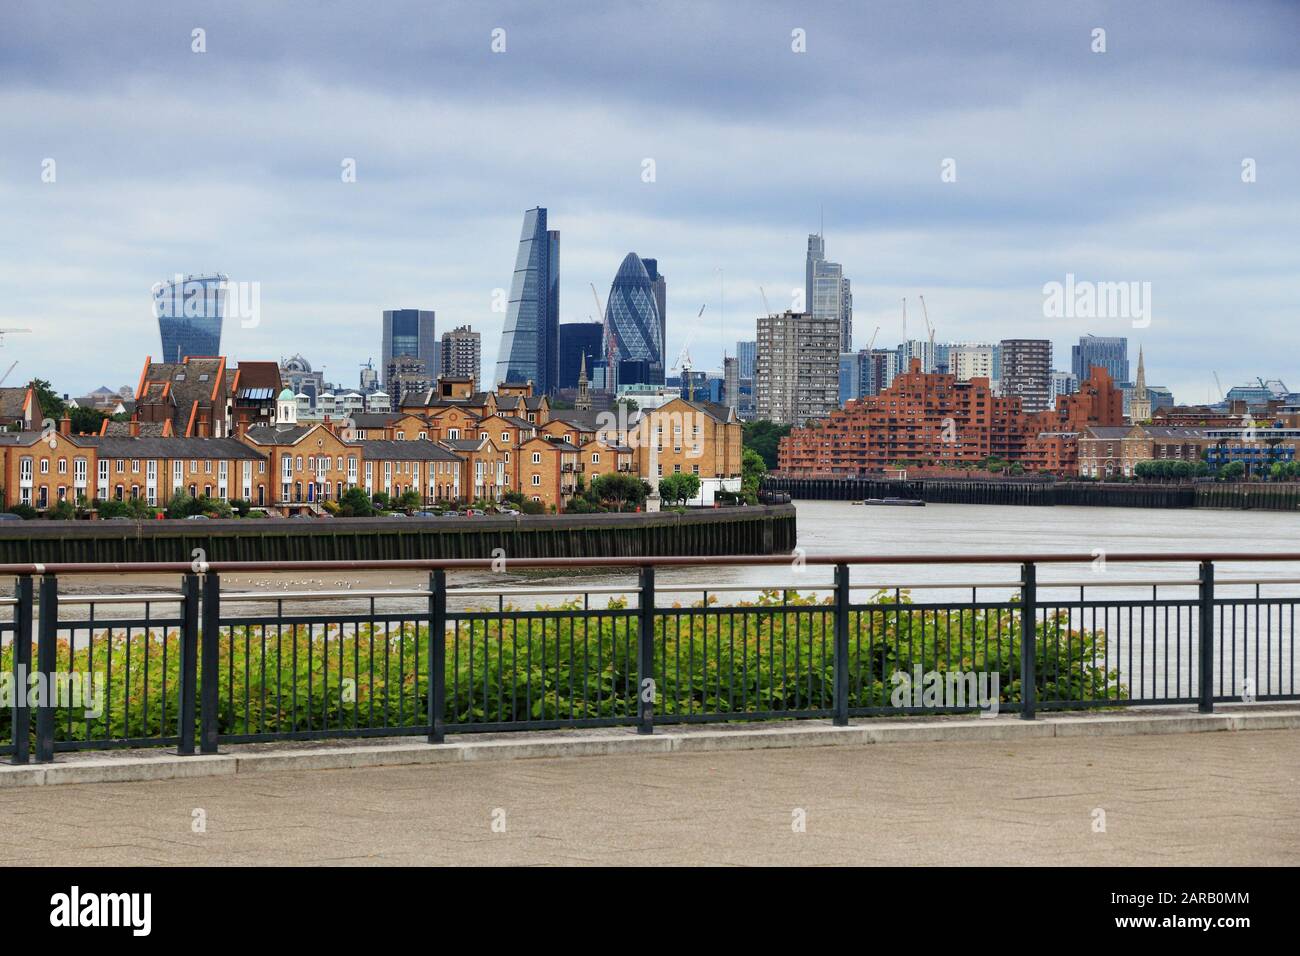 Ville de London Skyline - capitale de l'Angleterre. Vu de Canary Wharf. Banque D'Images